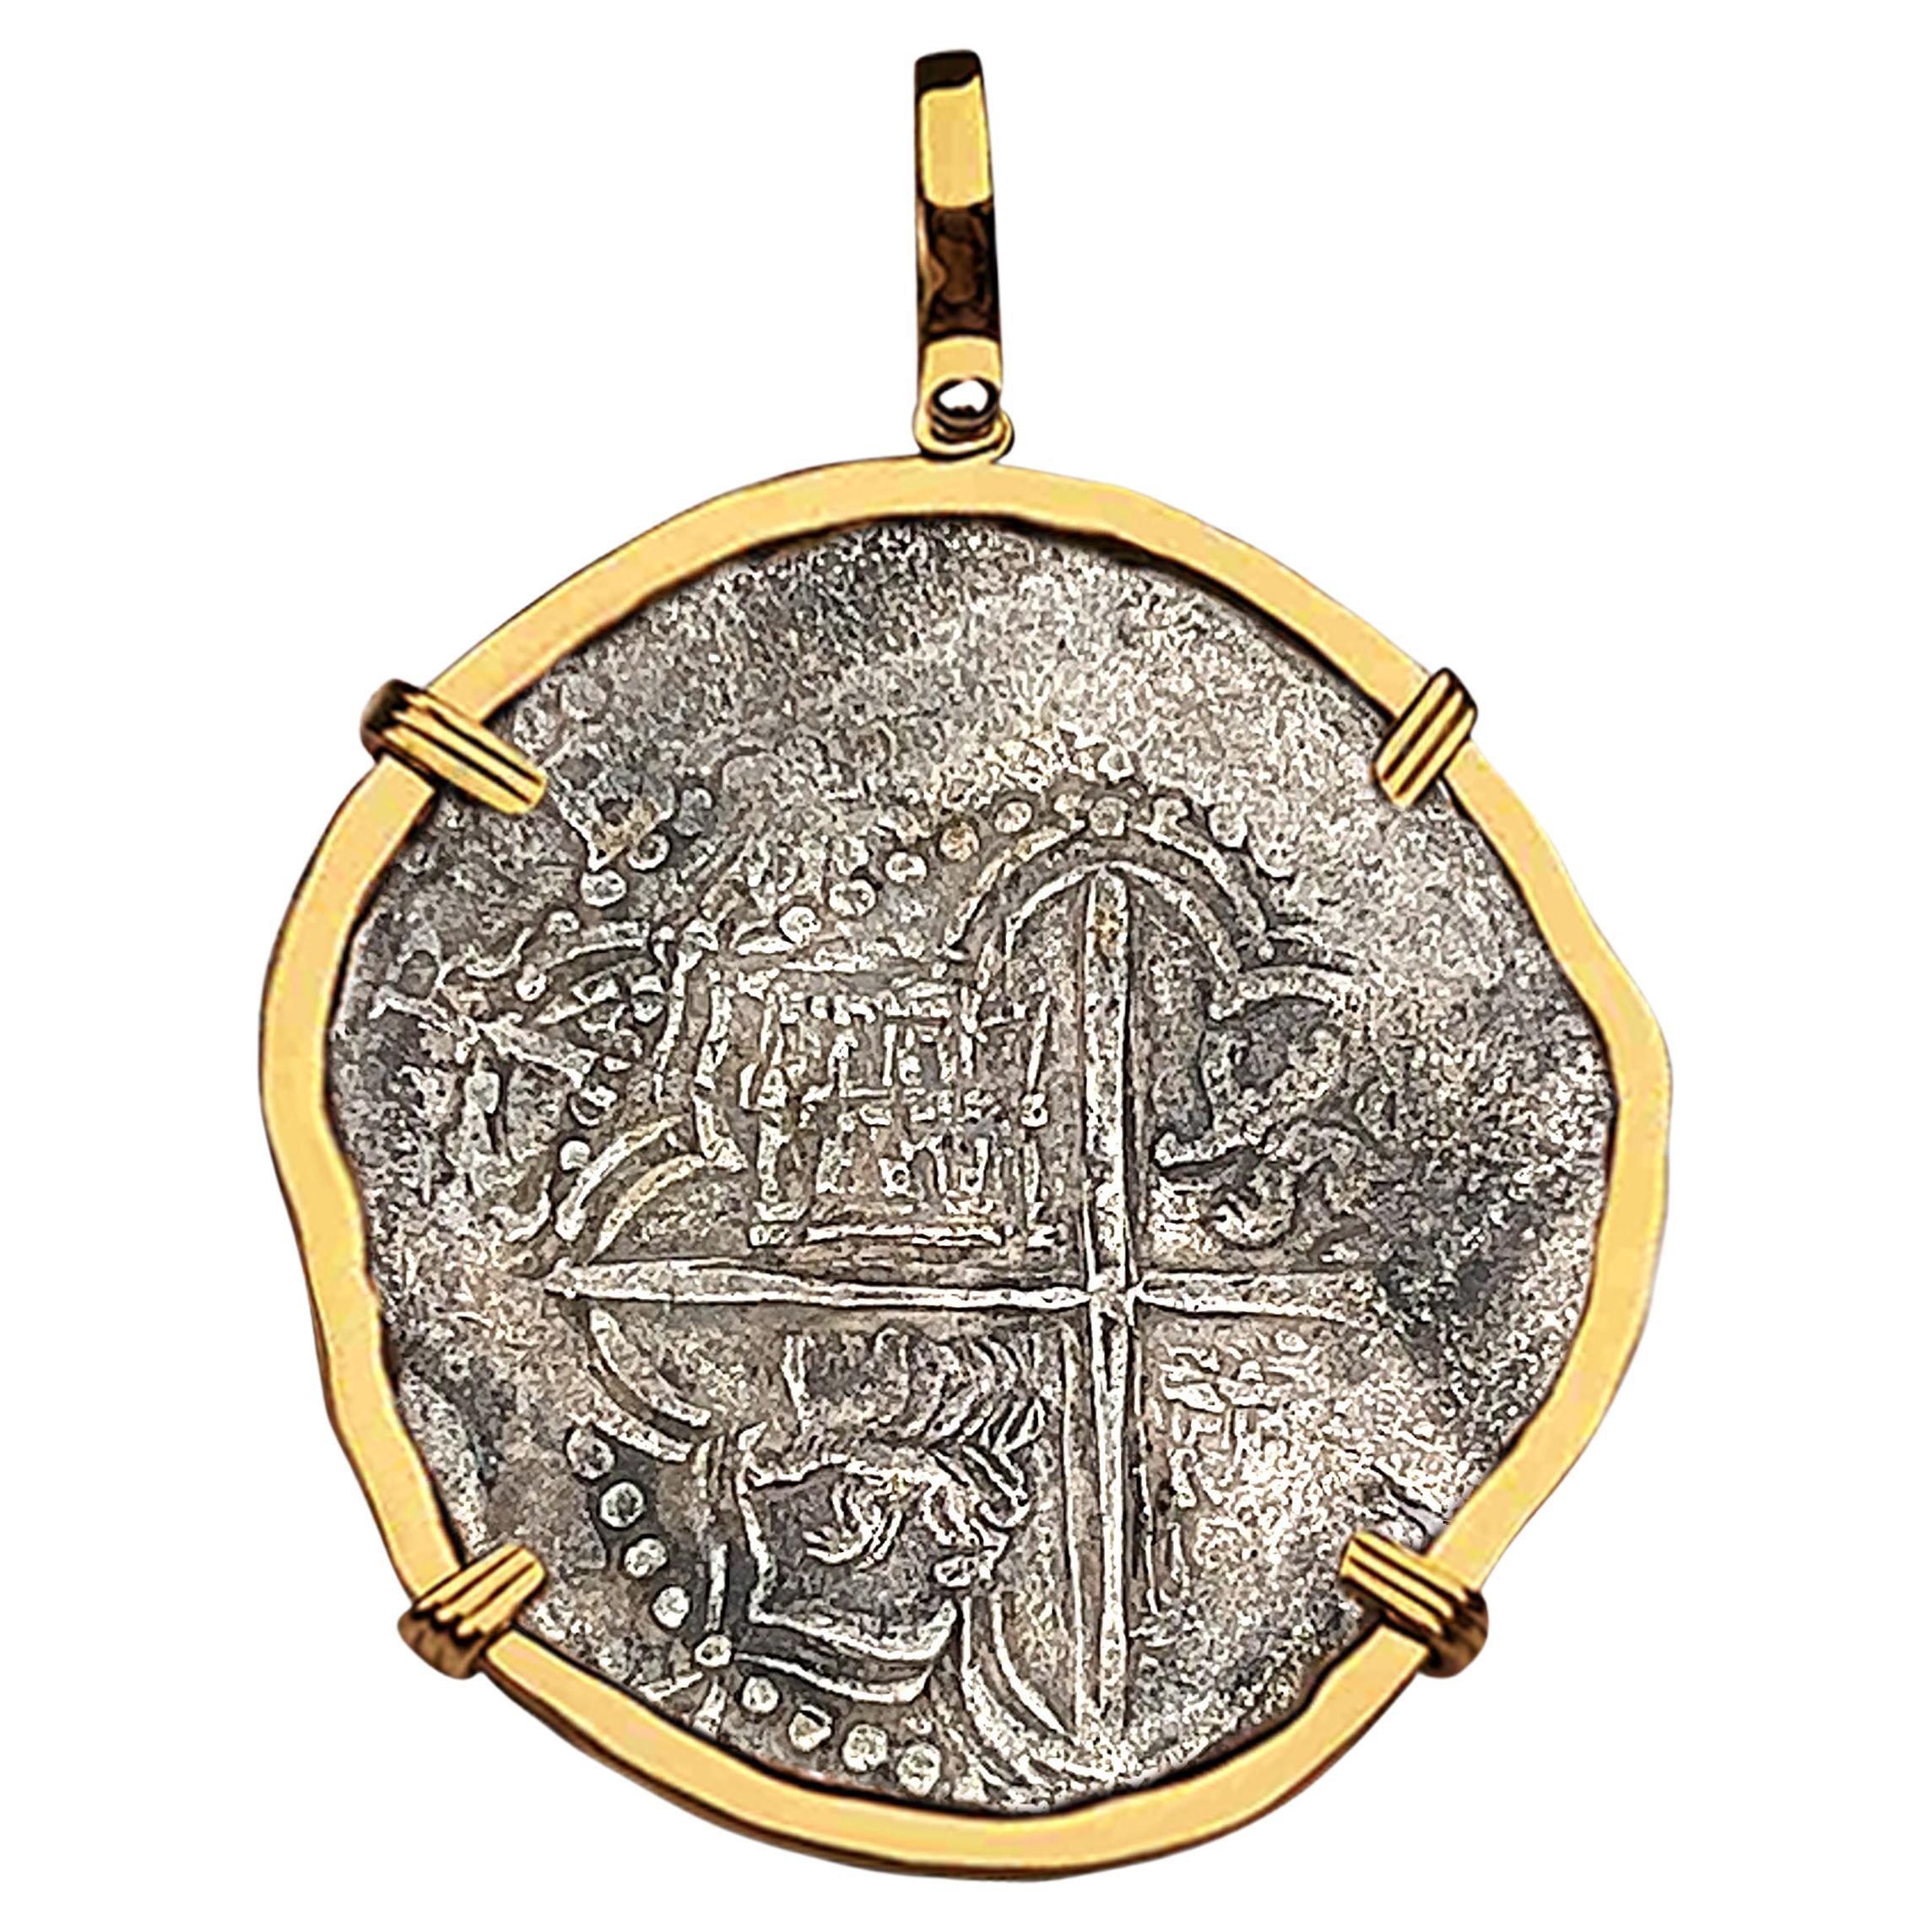 Atocha Shipwreck 8 Reale Grade 1 Assayer Q Coin and Gold Pendant